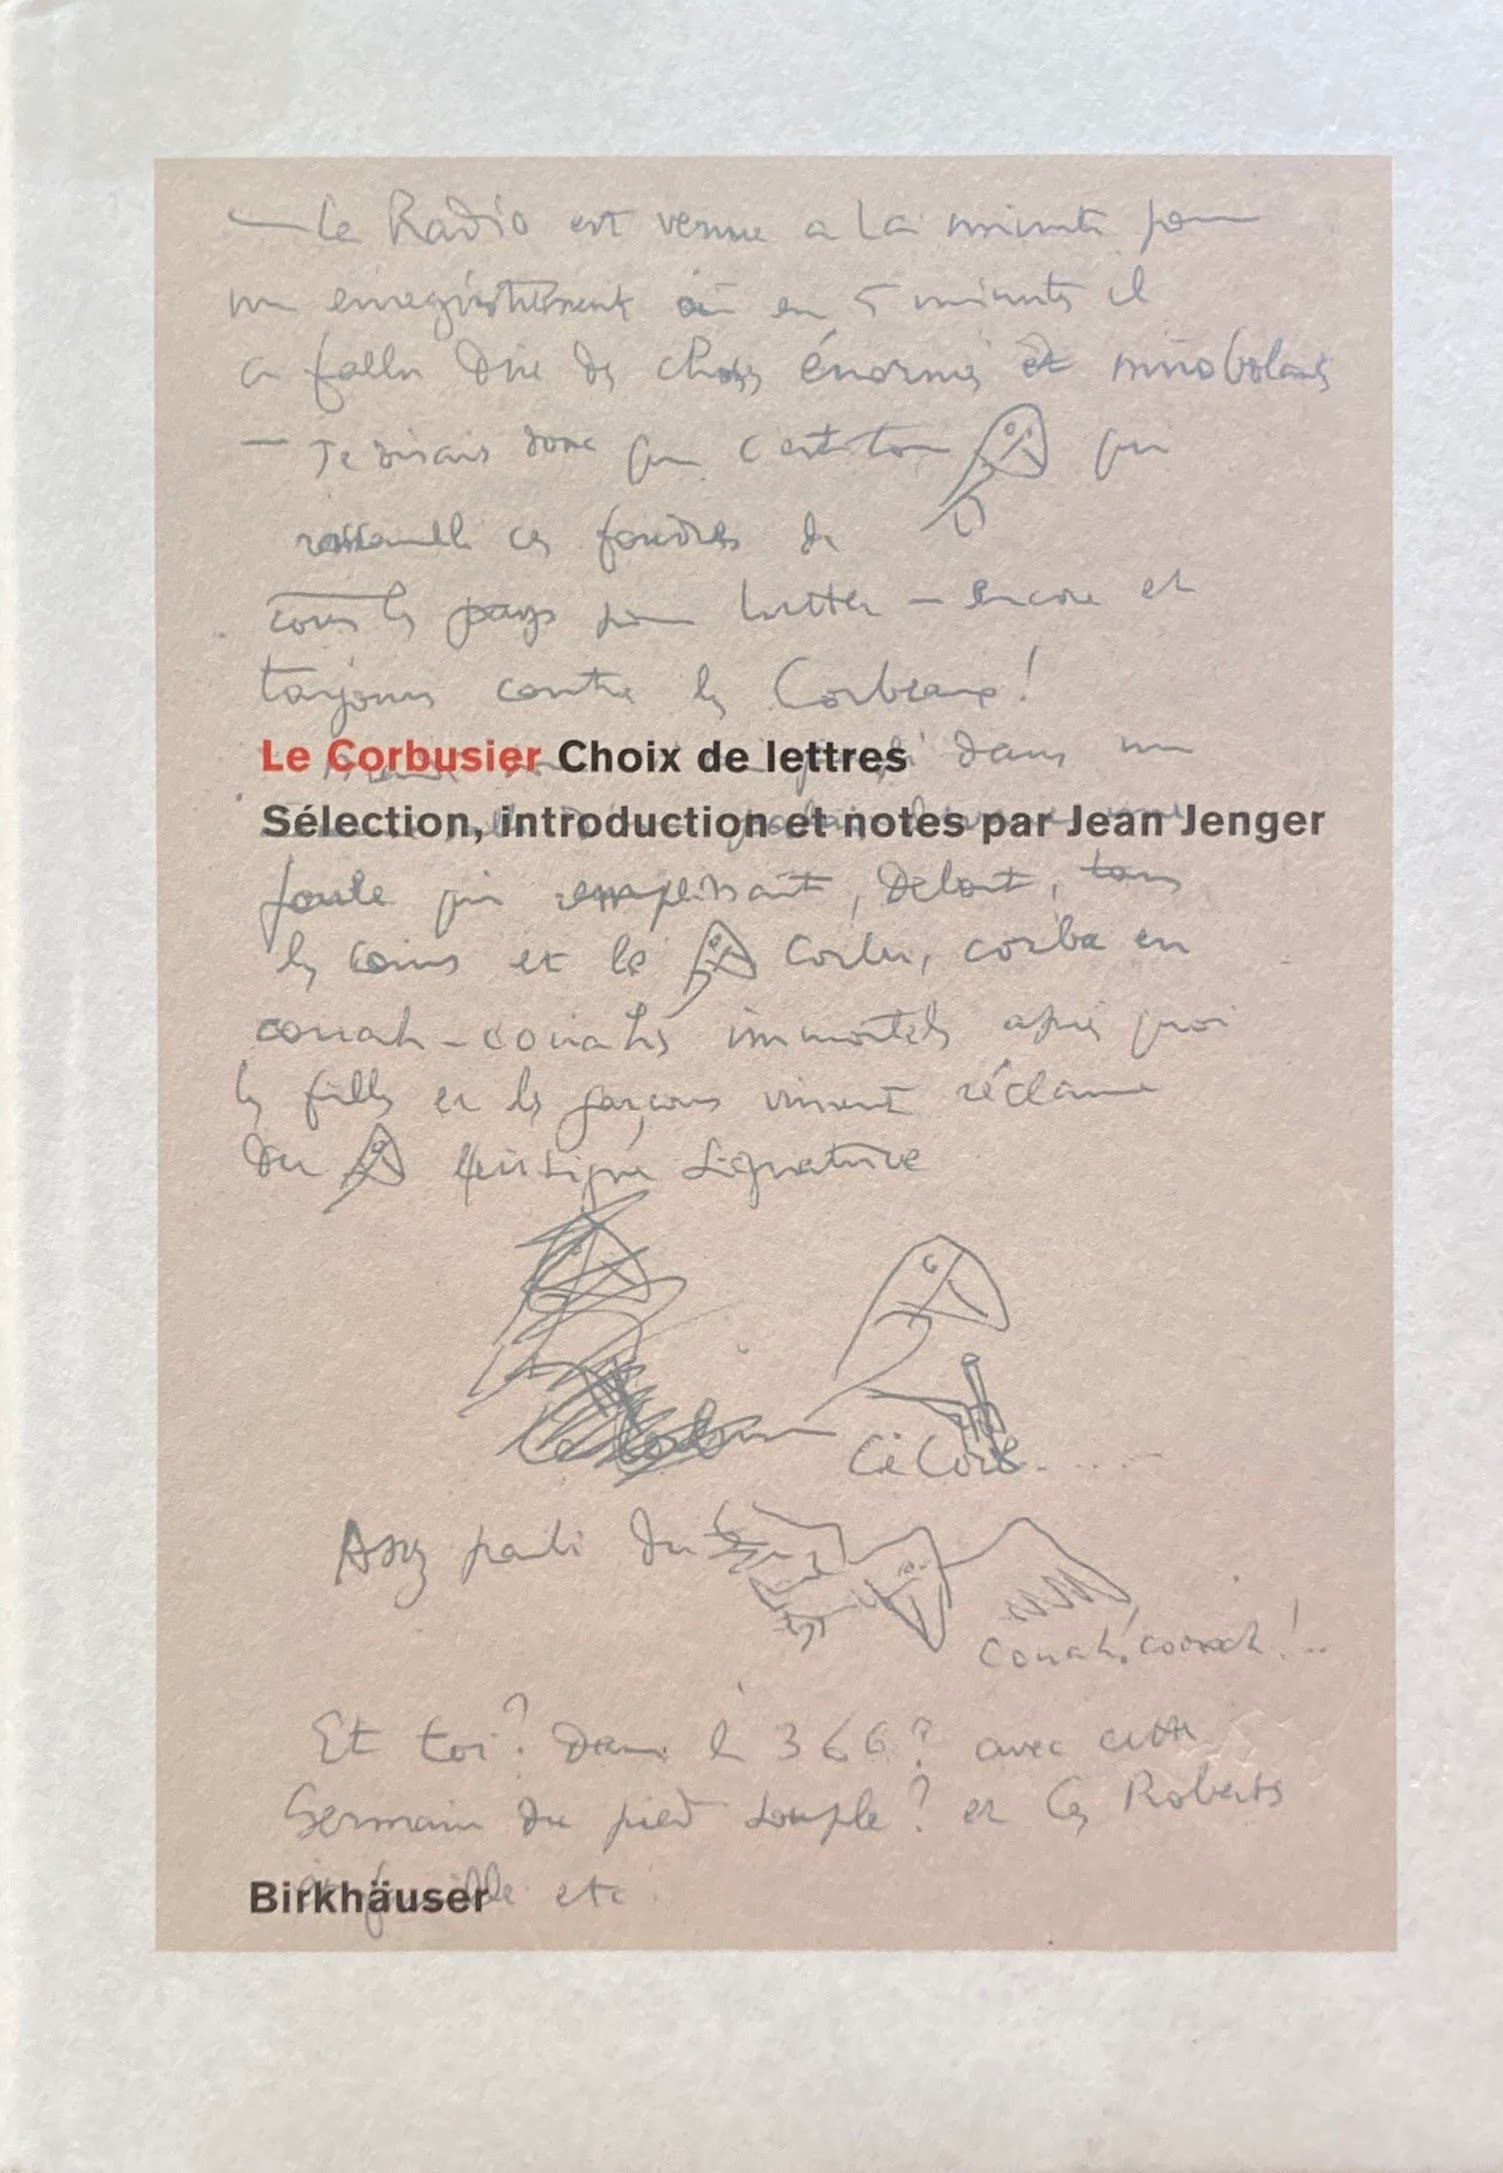 Le Corbusier　Choix de lettres　Selection introduction et notes par jean jenger　ル・コルビュジエ